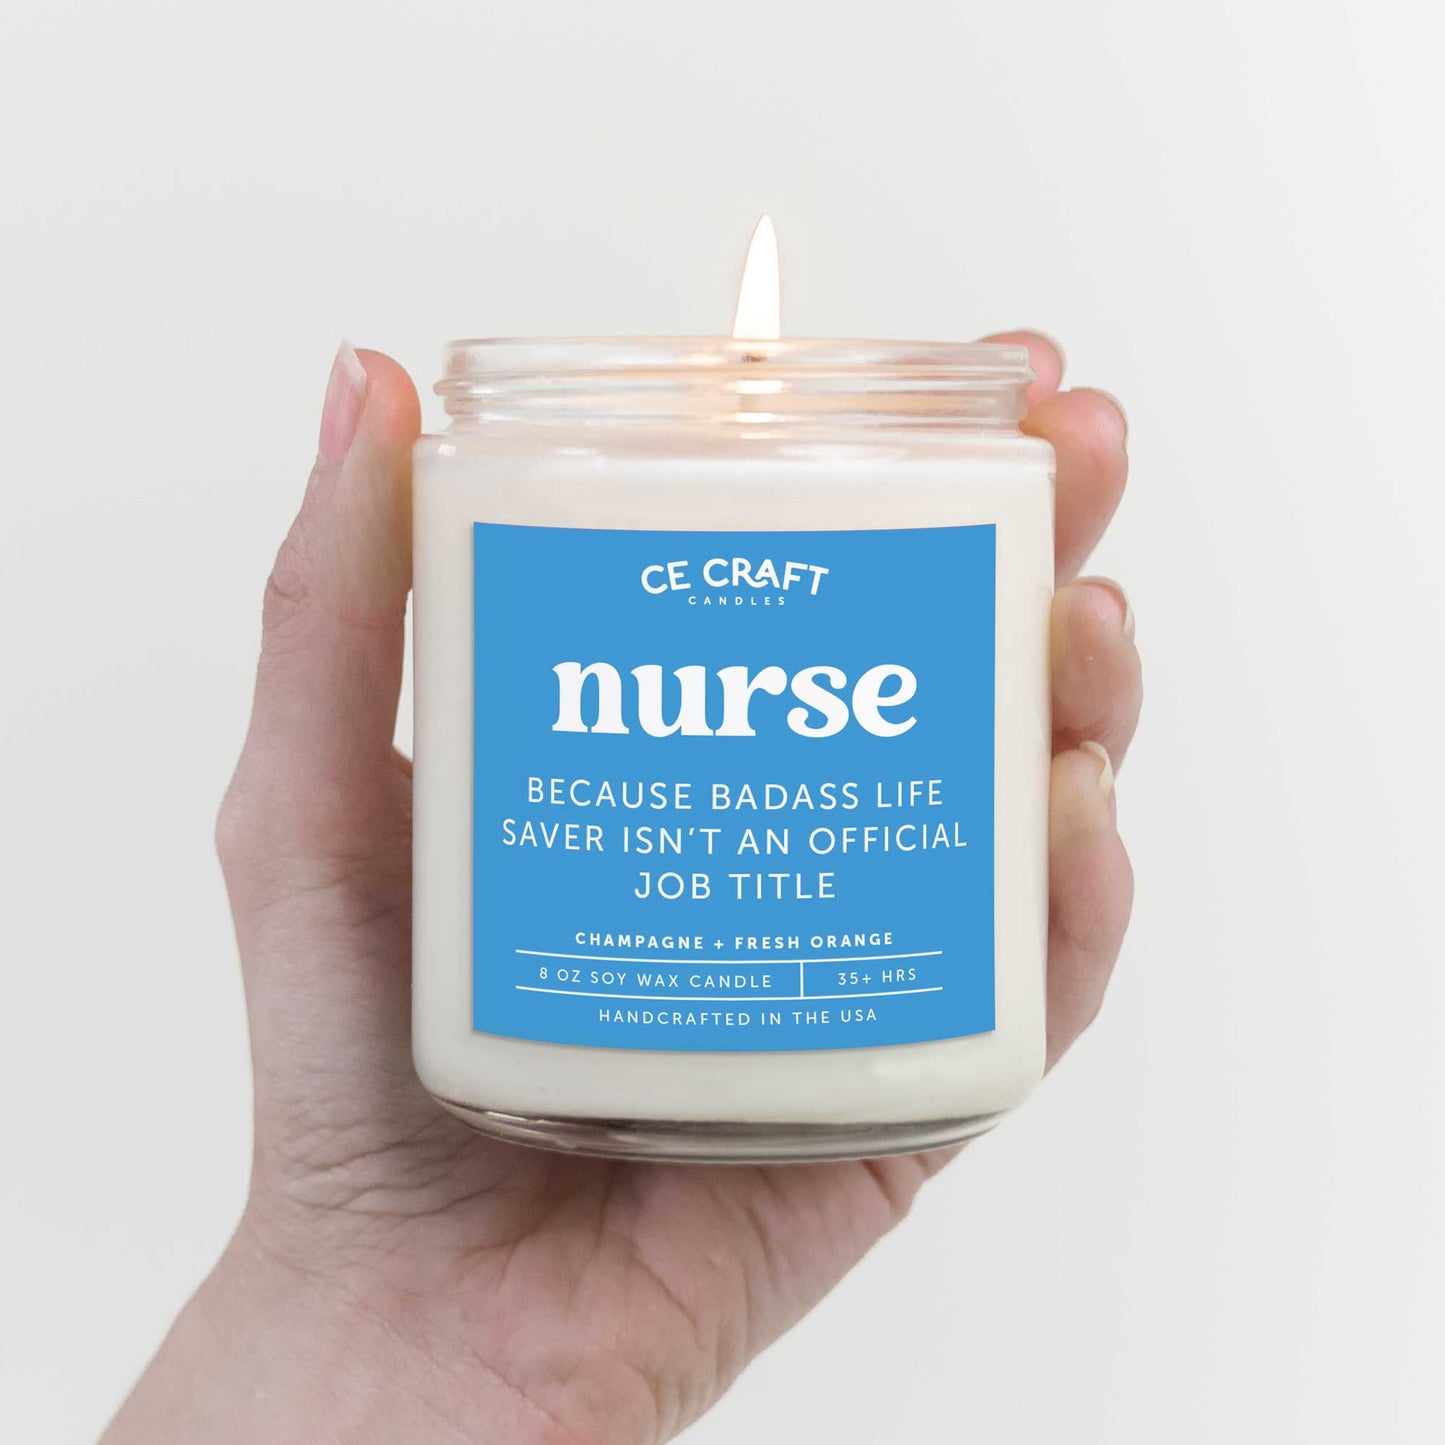 Nurse Because Badass Life Saver Isn't an Official Job Title Candle Candle CE Craft 